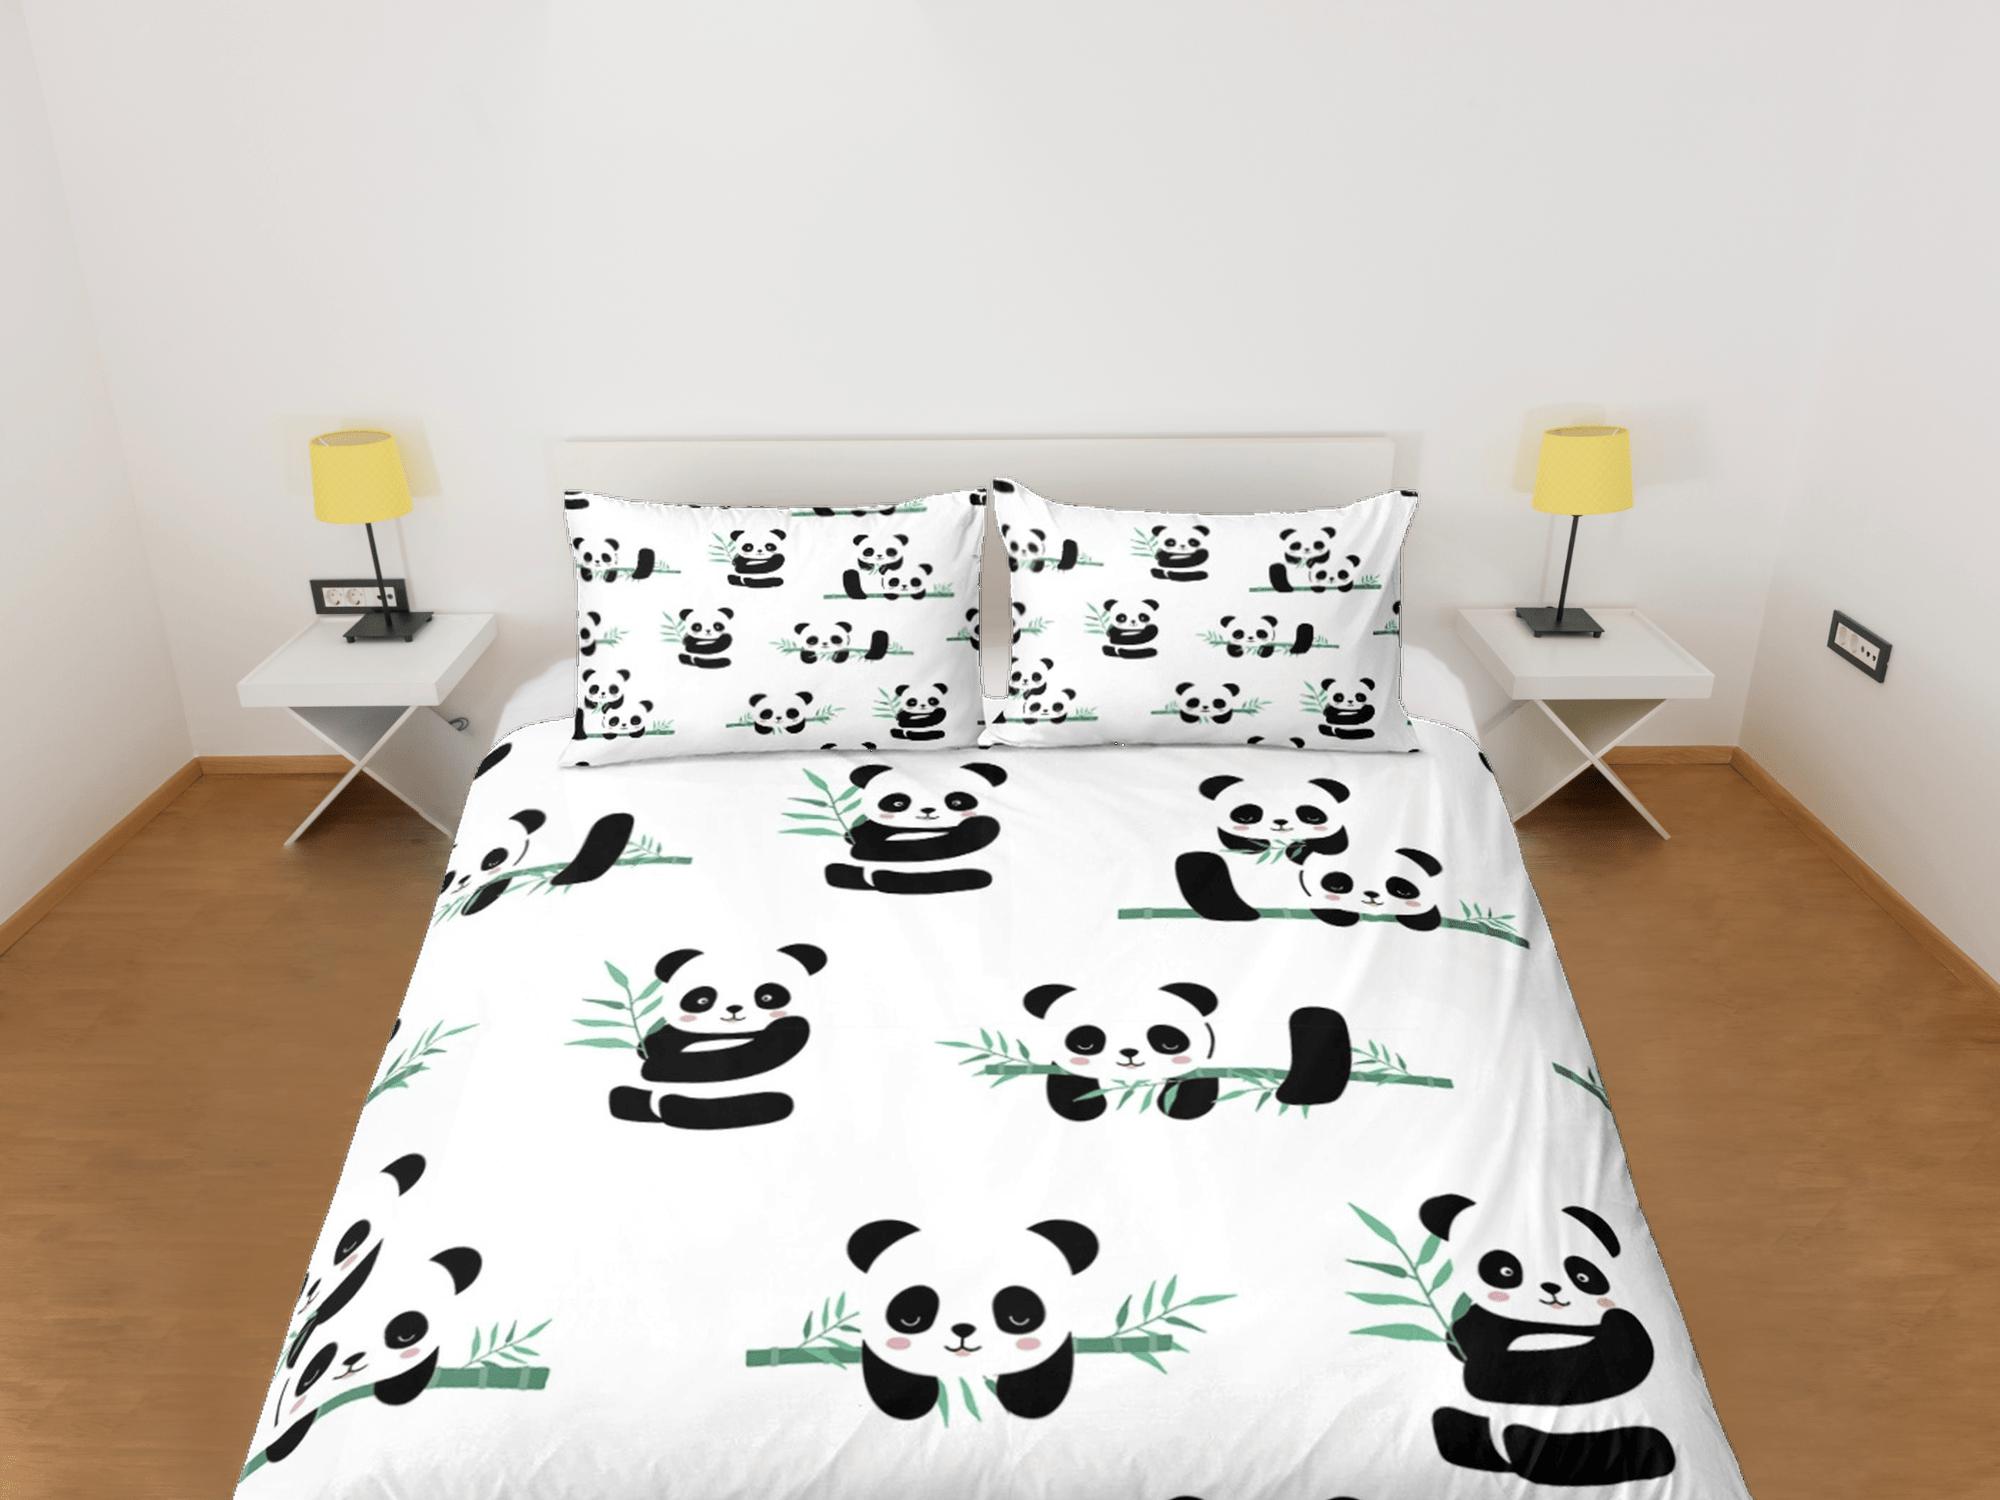 daintyduvet Panda and bamboo duvet cover kids, bedding set full, king, queen, dorm bedding, toddler bedding, aesthetic bedspread, panda lovers gift